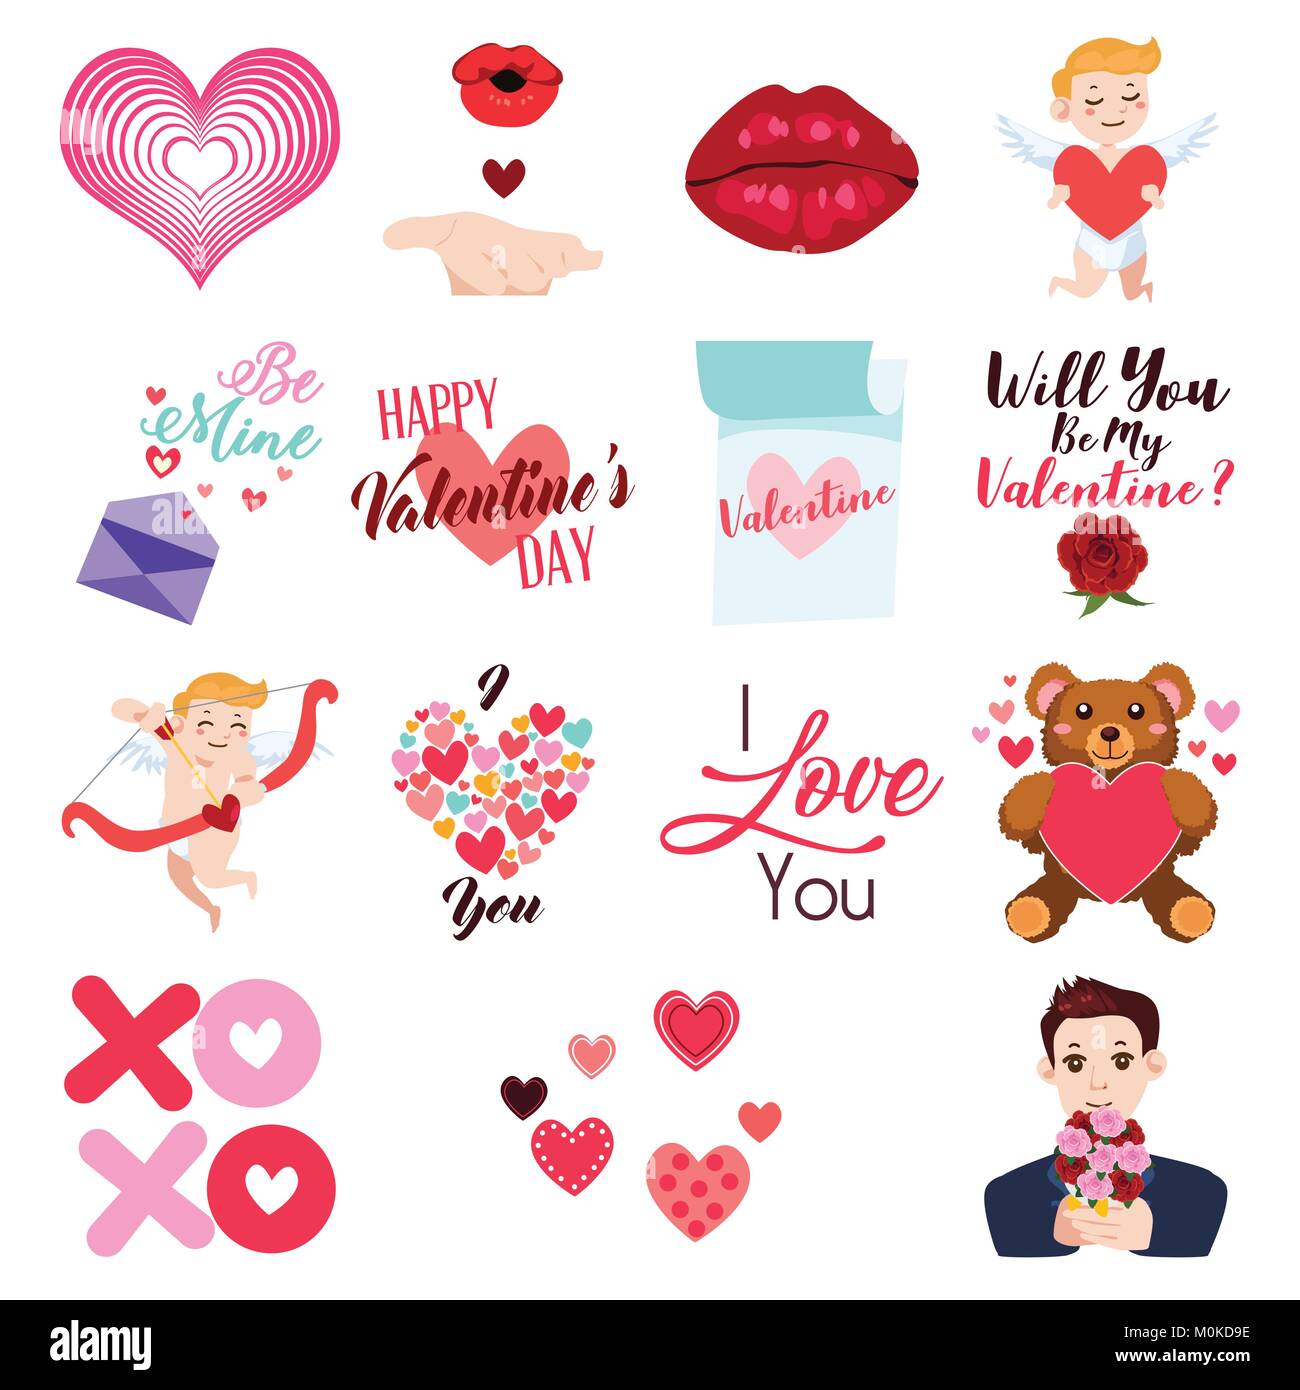 Un vecteur illustration de Valentine Day Icons et Clip arts Illustration de Vecteur